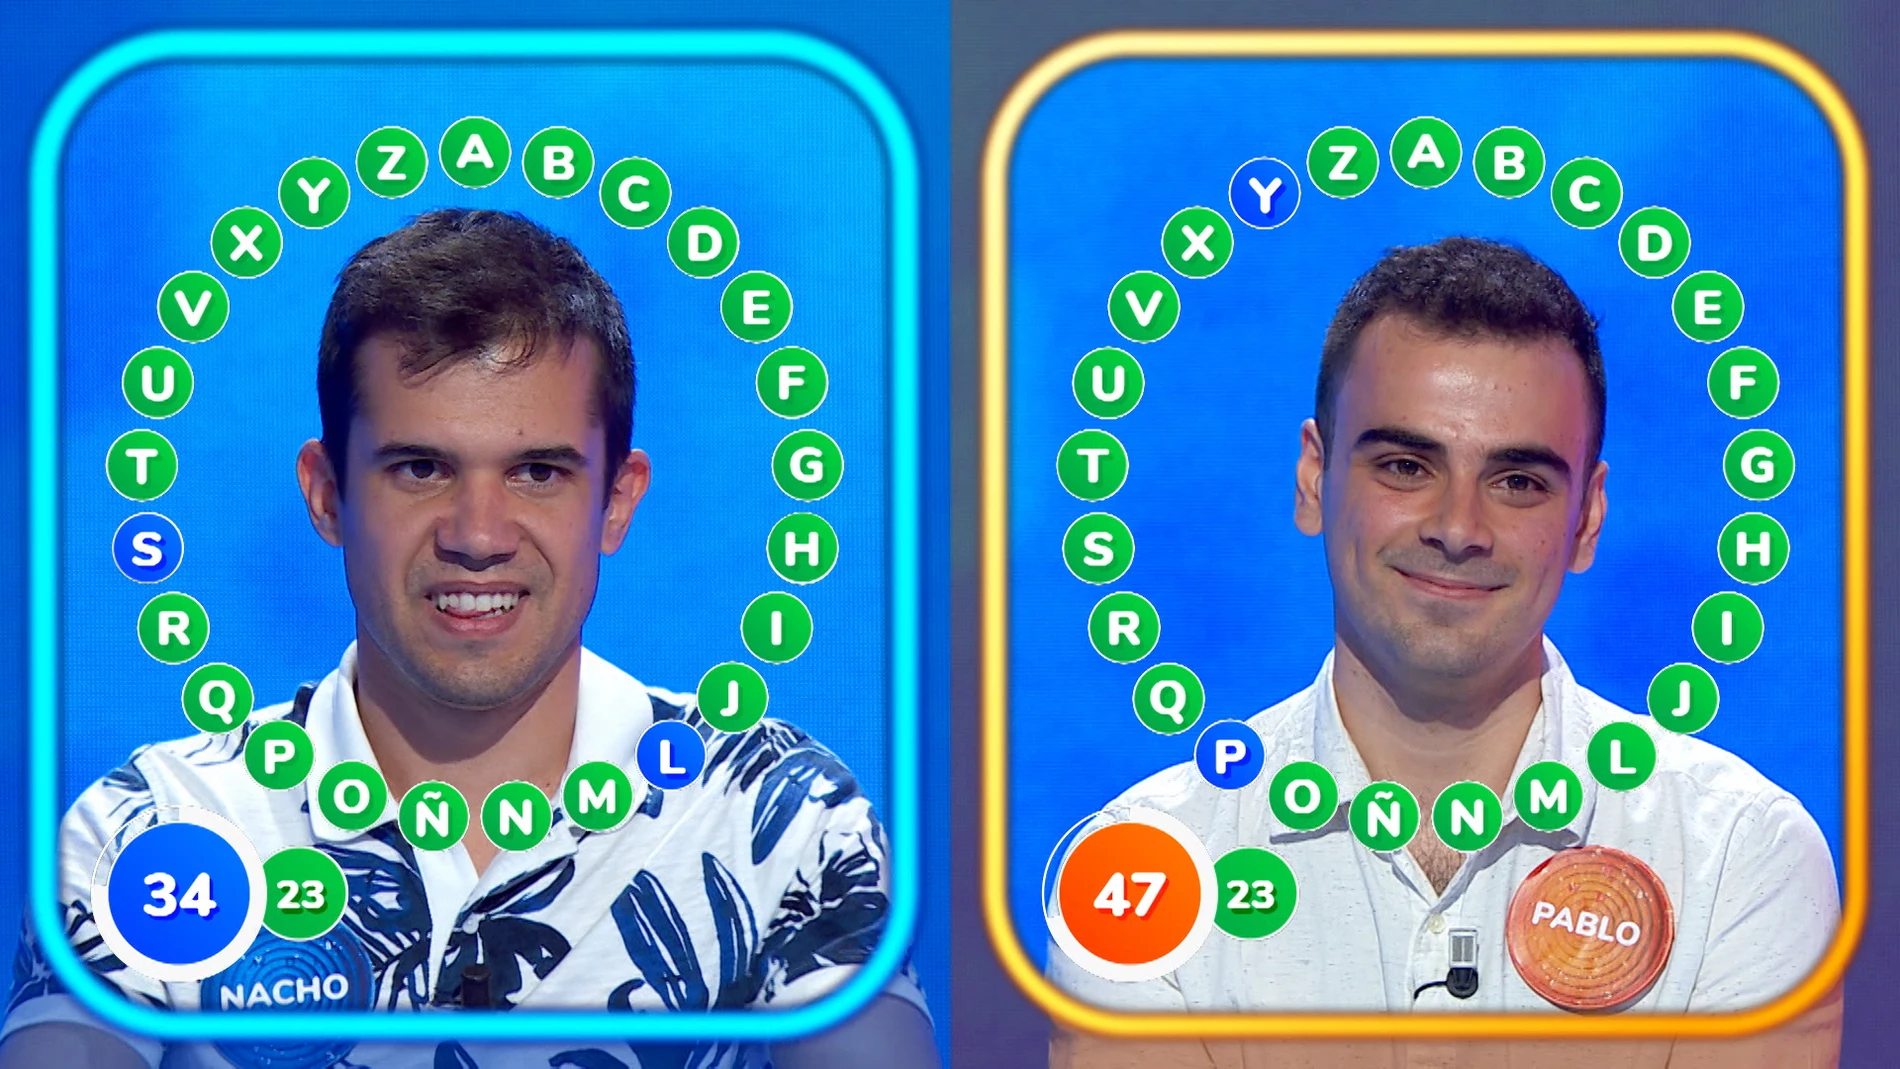 15 aciertos consecutivos marcan ‘El Rosco’ más igualado de Pablo y Nacho, ¿quién se alzará con la victoria?